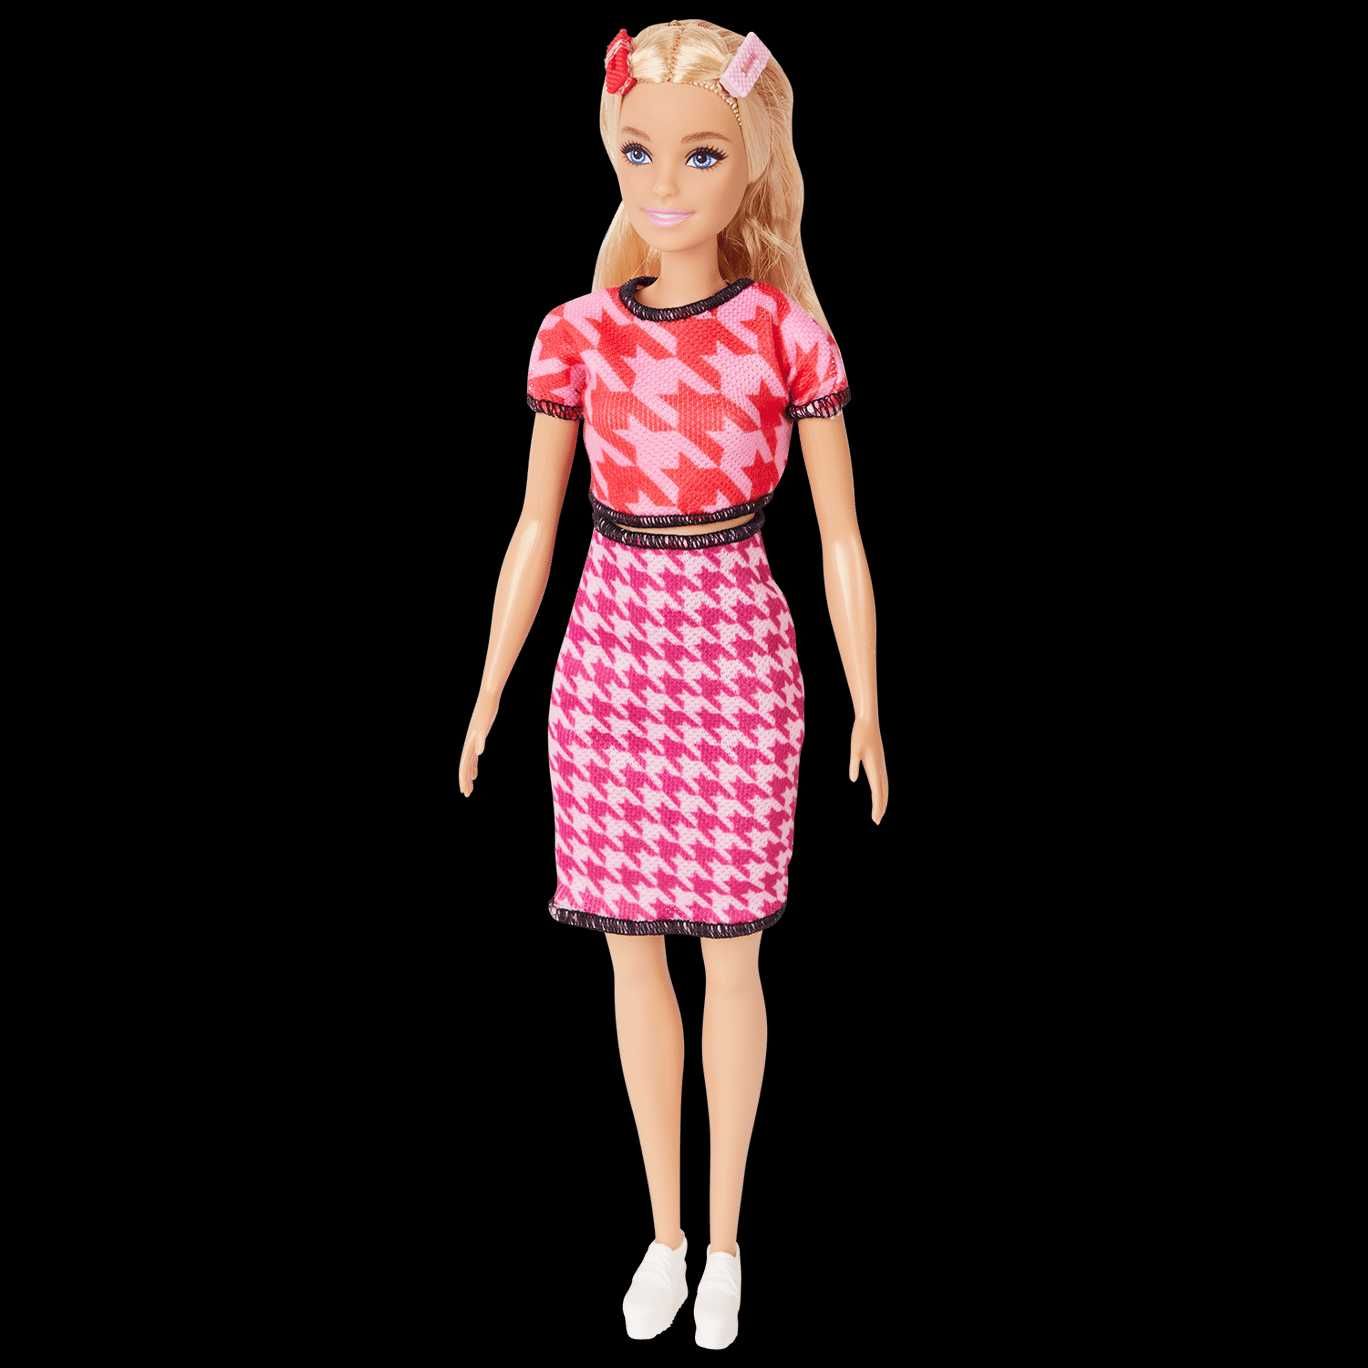 Barbie Fashionista
Różne warianty KUP Z OLX!